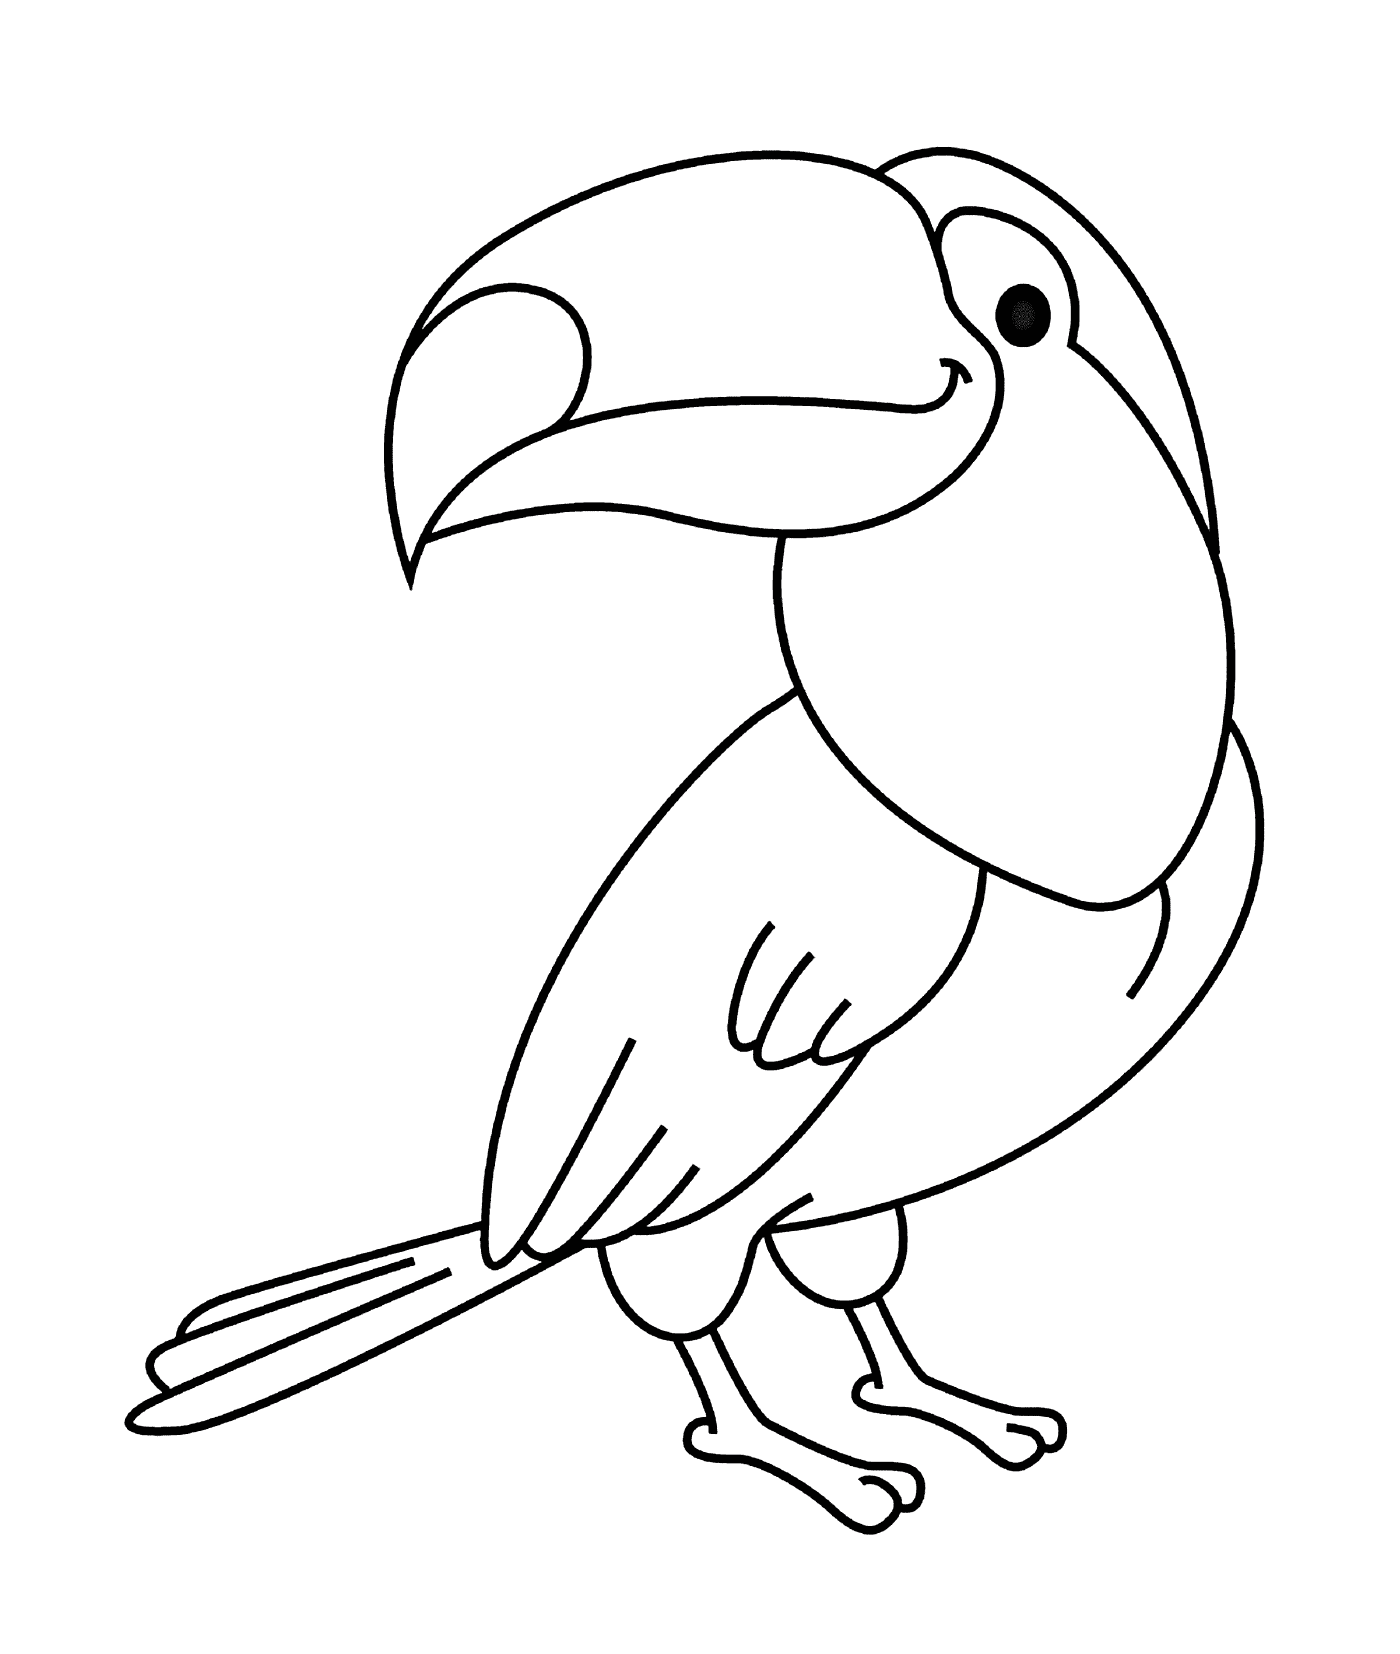   Oiseau toucan 